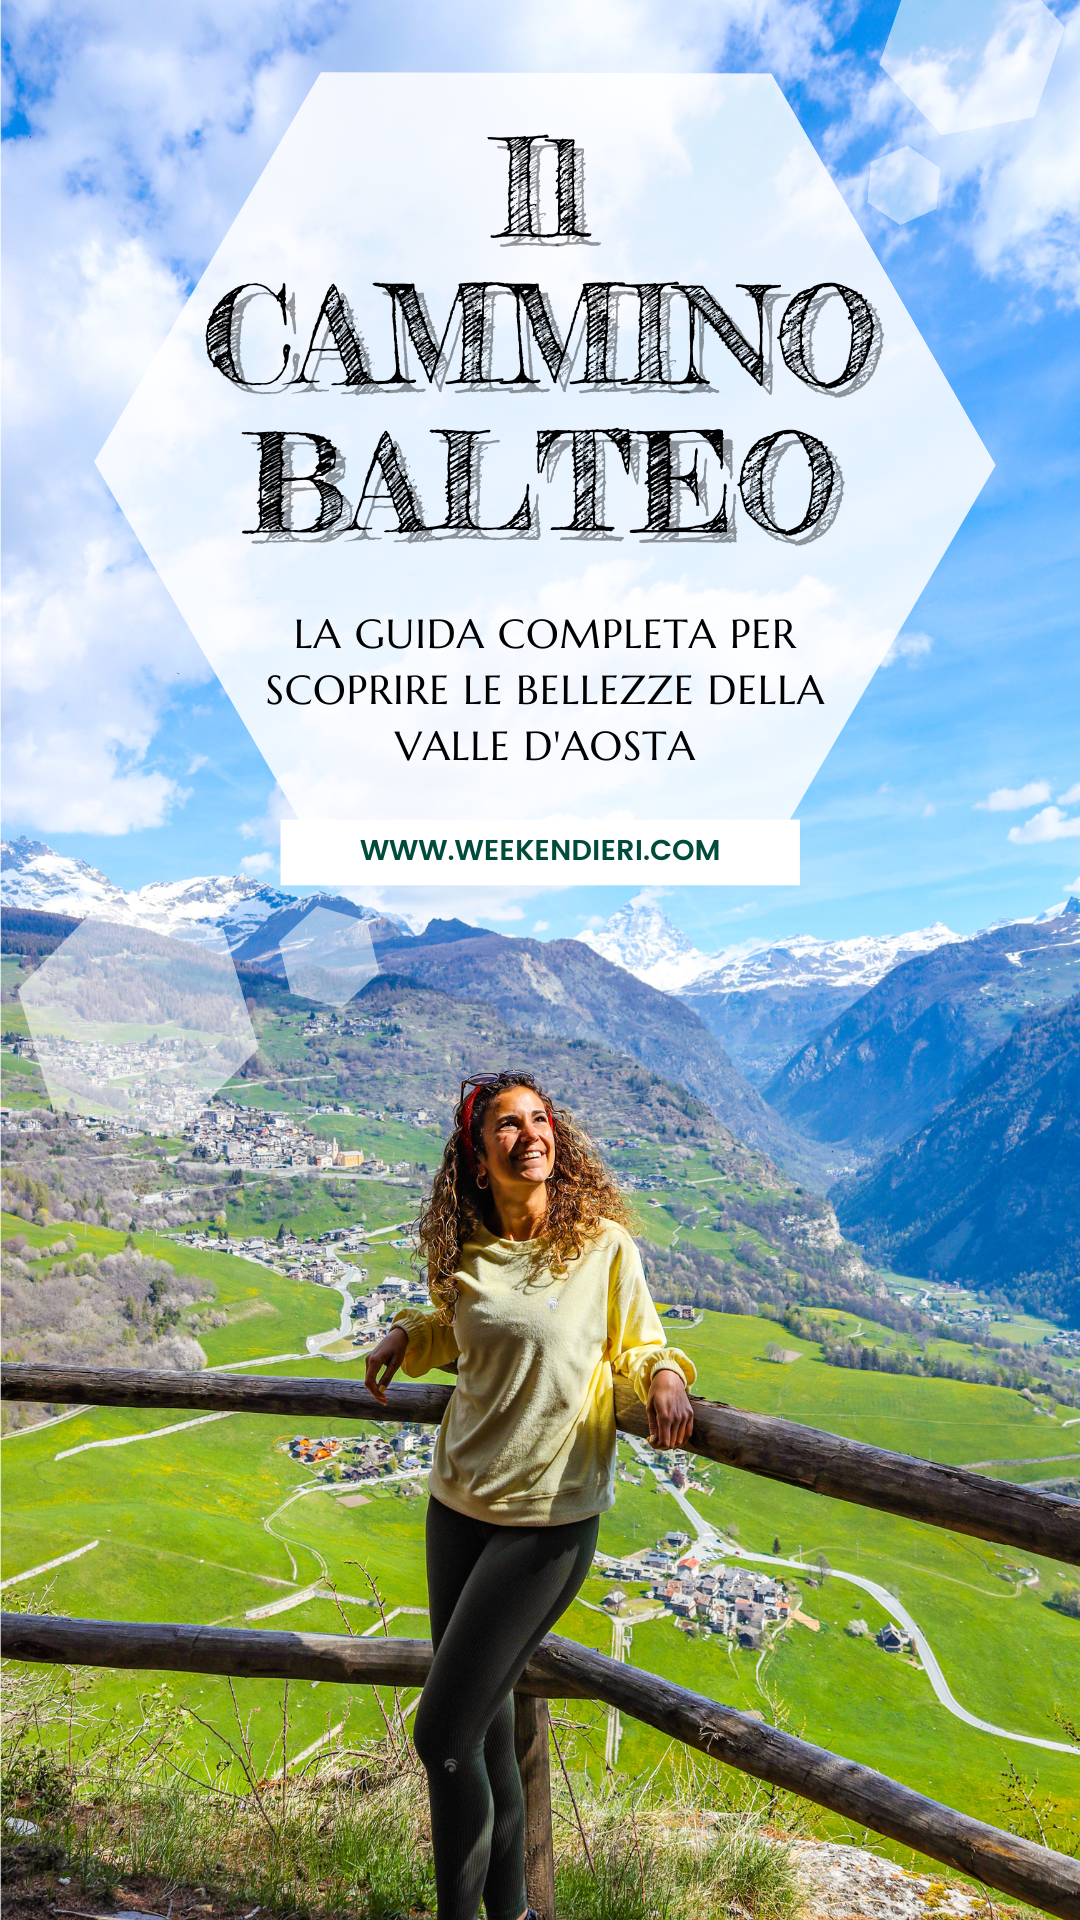 il Cammino Balteo e le bellezze della Valle d'Aosta